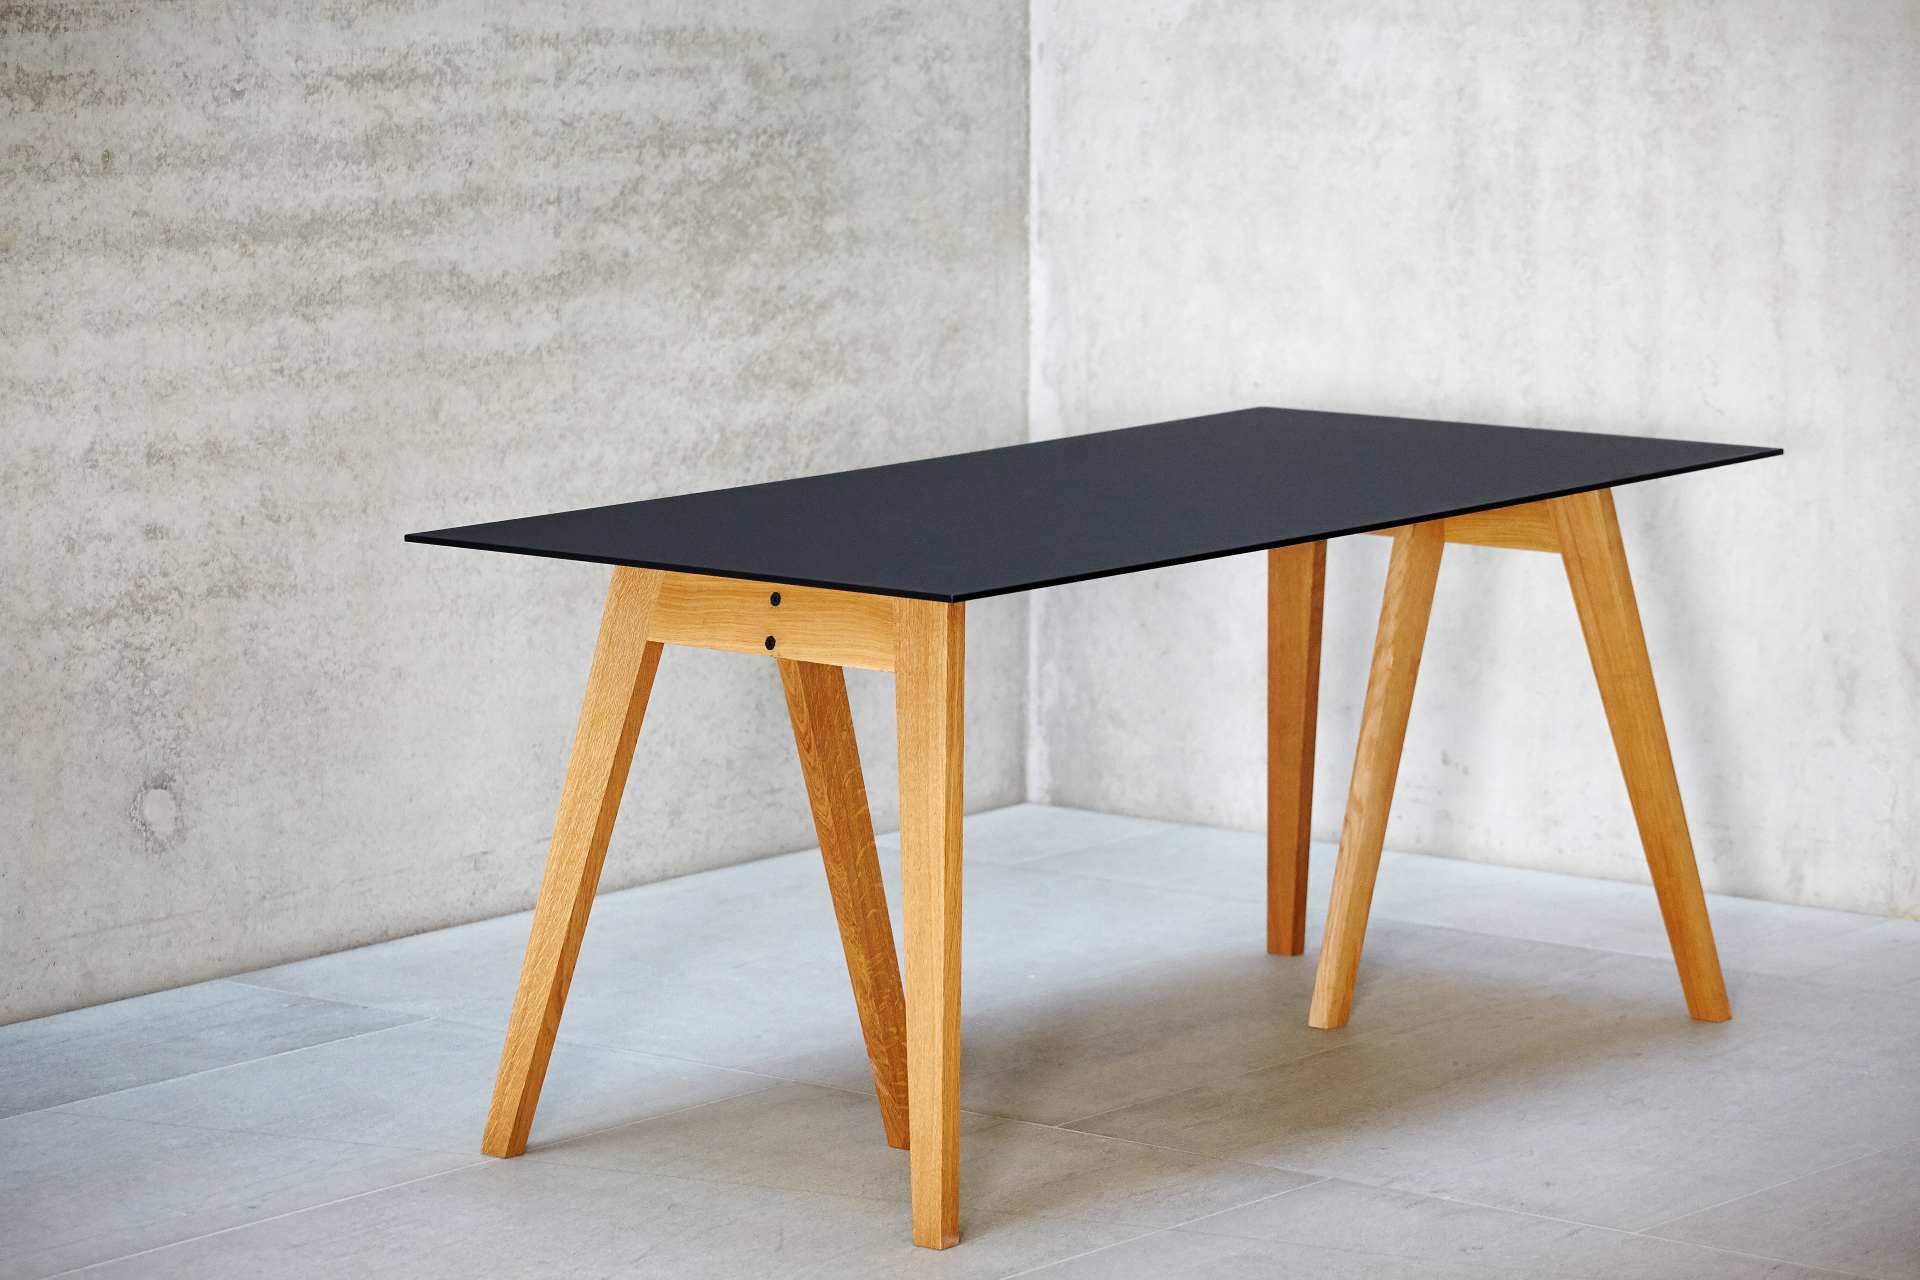 Der Esstisch Neo überzeugt mit seinem einzigartigen Design. Gefertigt wurde der Tisch aus massiver Eiche die geölt wurde, dies verleiht dem Tisch seine Farbe. Designet wurde er von der Marke Jan Kurtz.